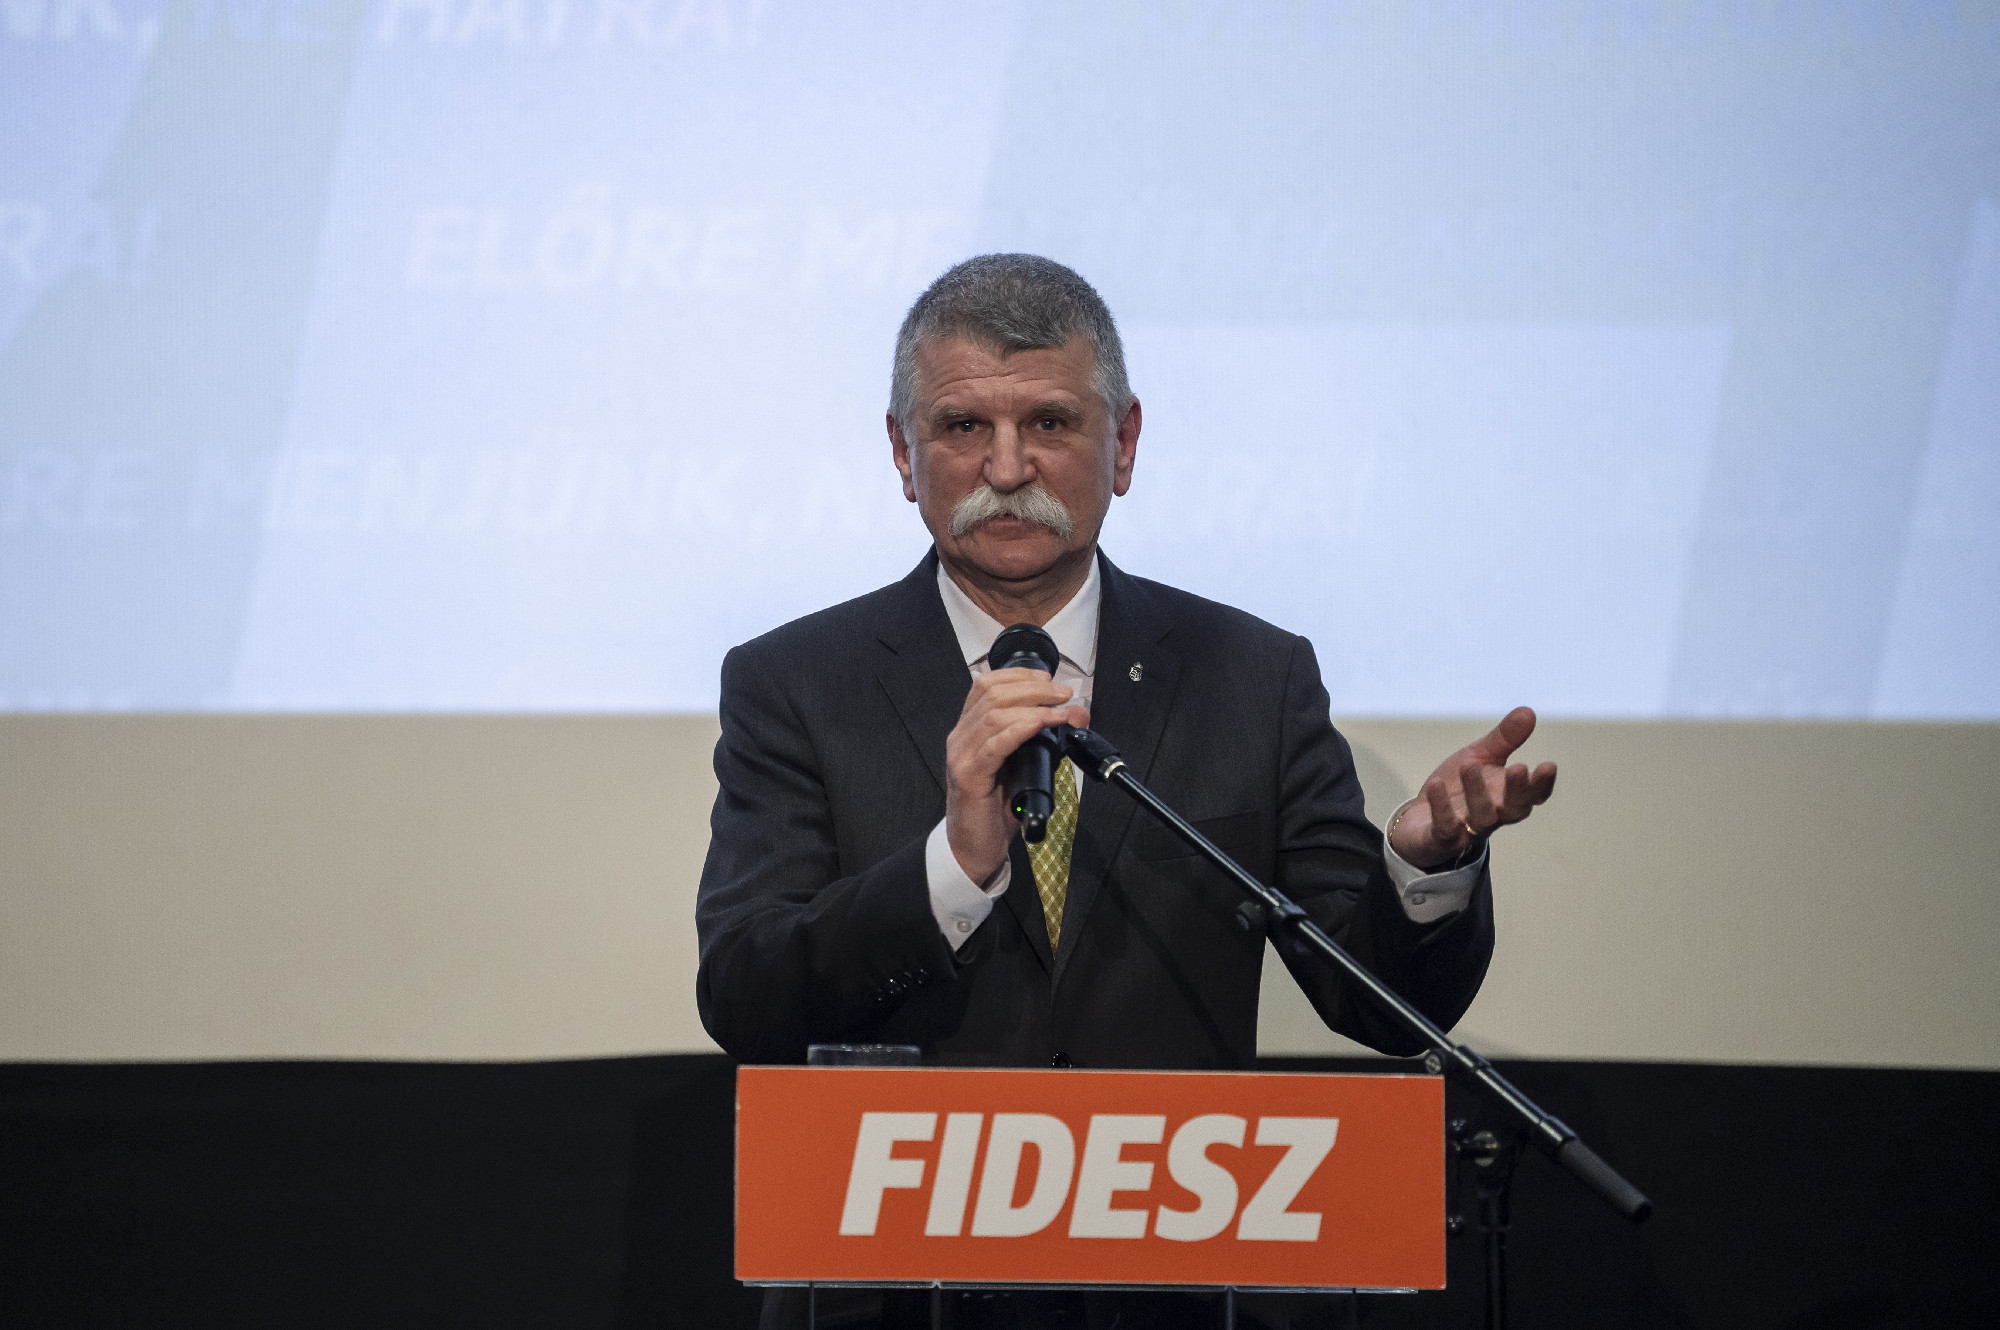 Kövér László megmondta, miért kell a Fideszre szavazni 